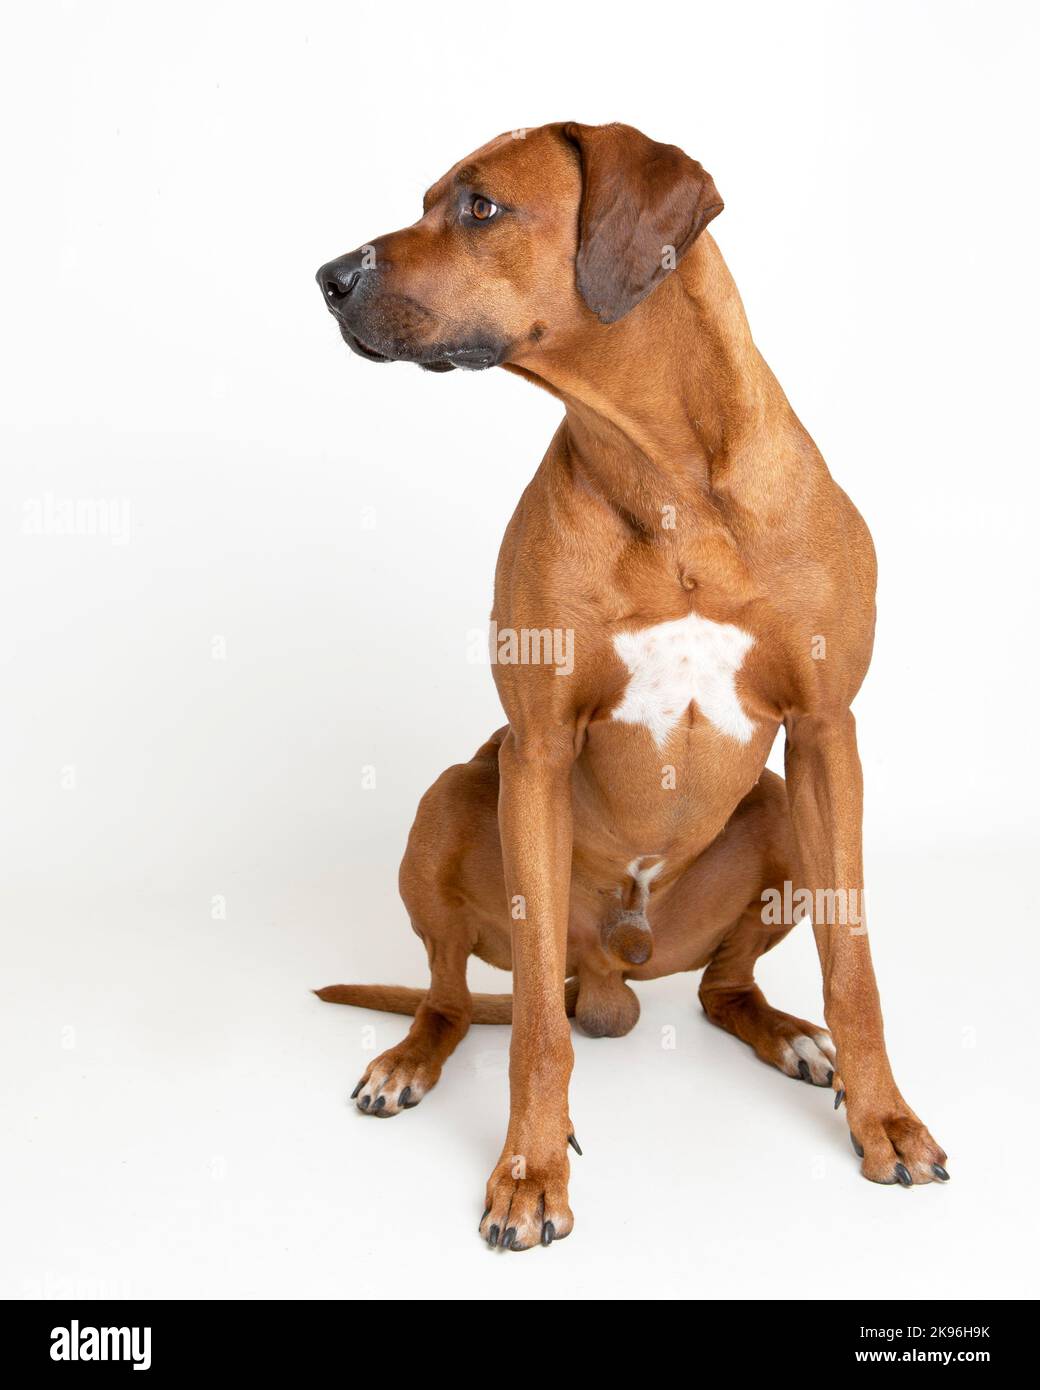 Rhodesian Ridgeback Dog fotografato in un ambiente di studio professionale Foto Stock